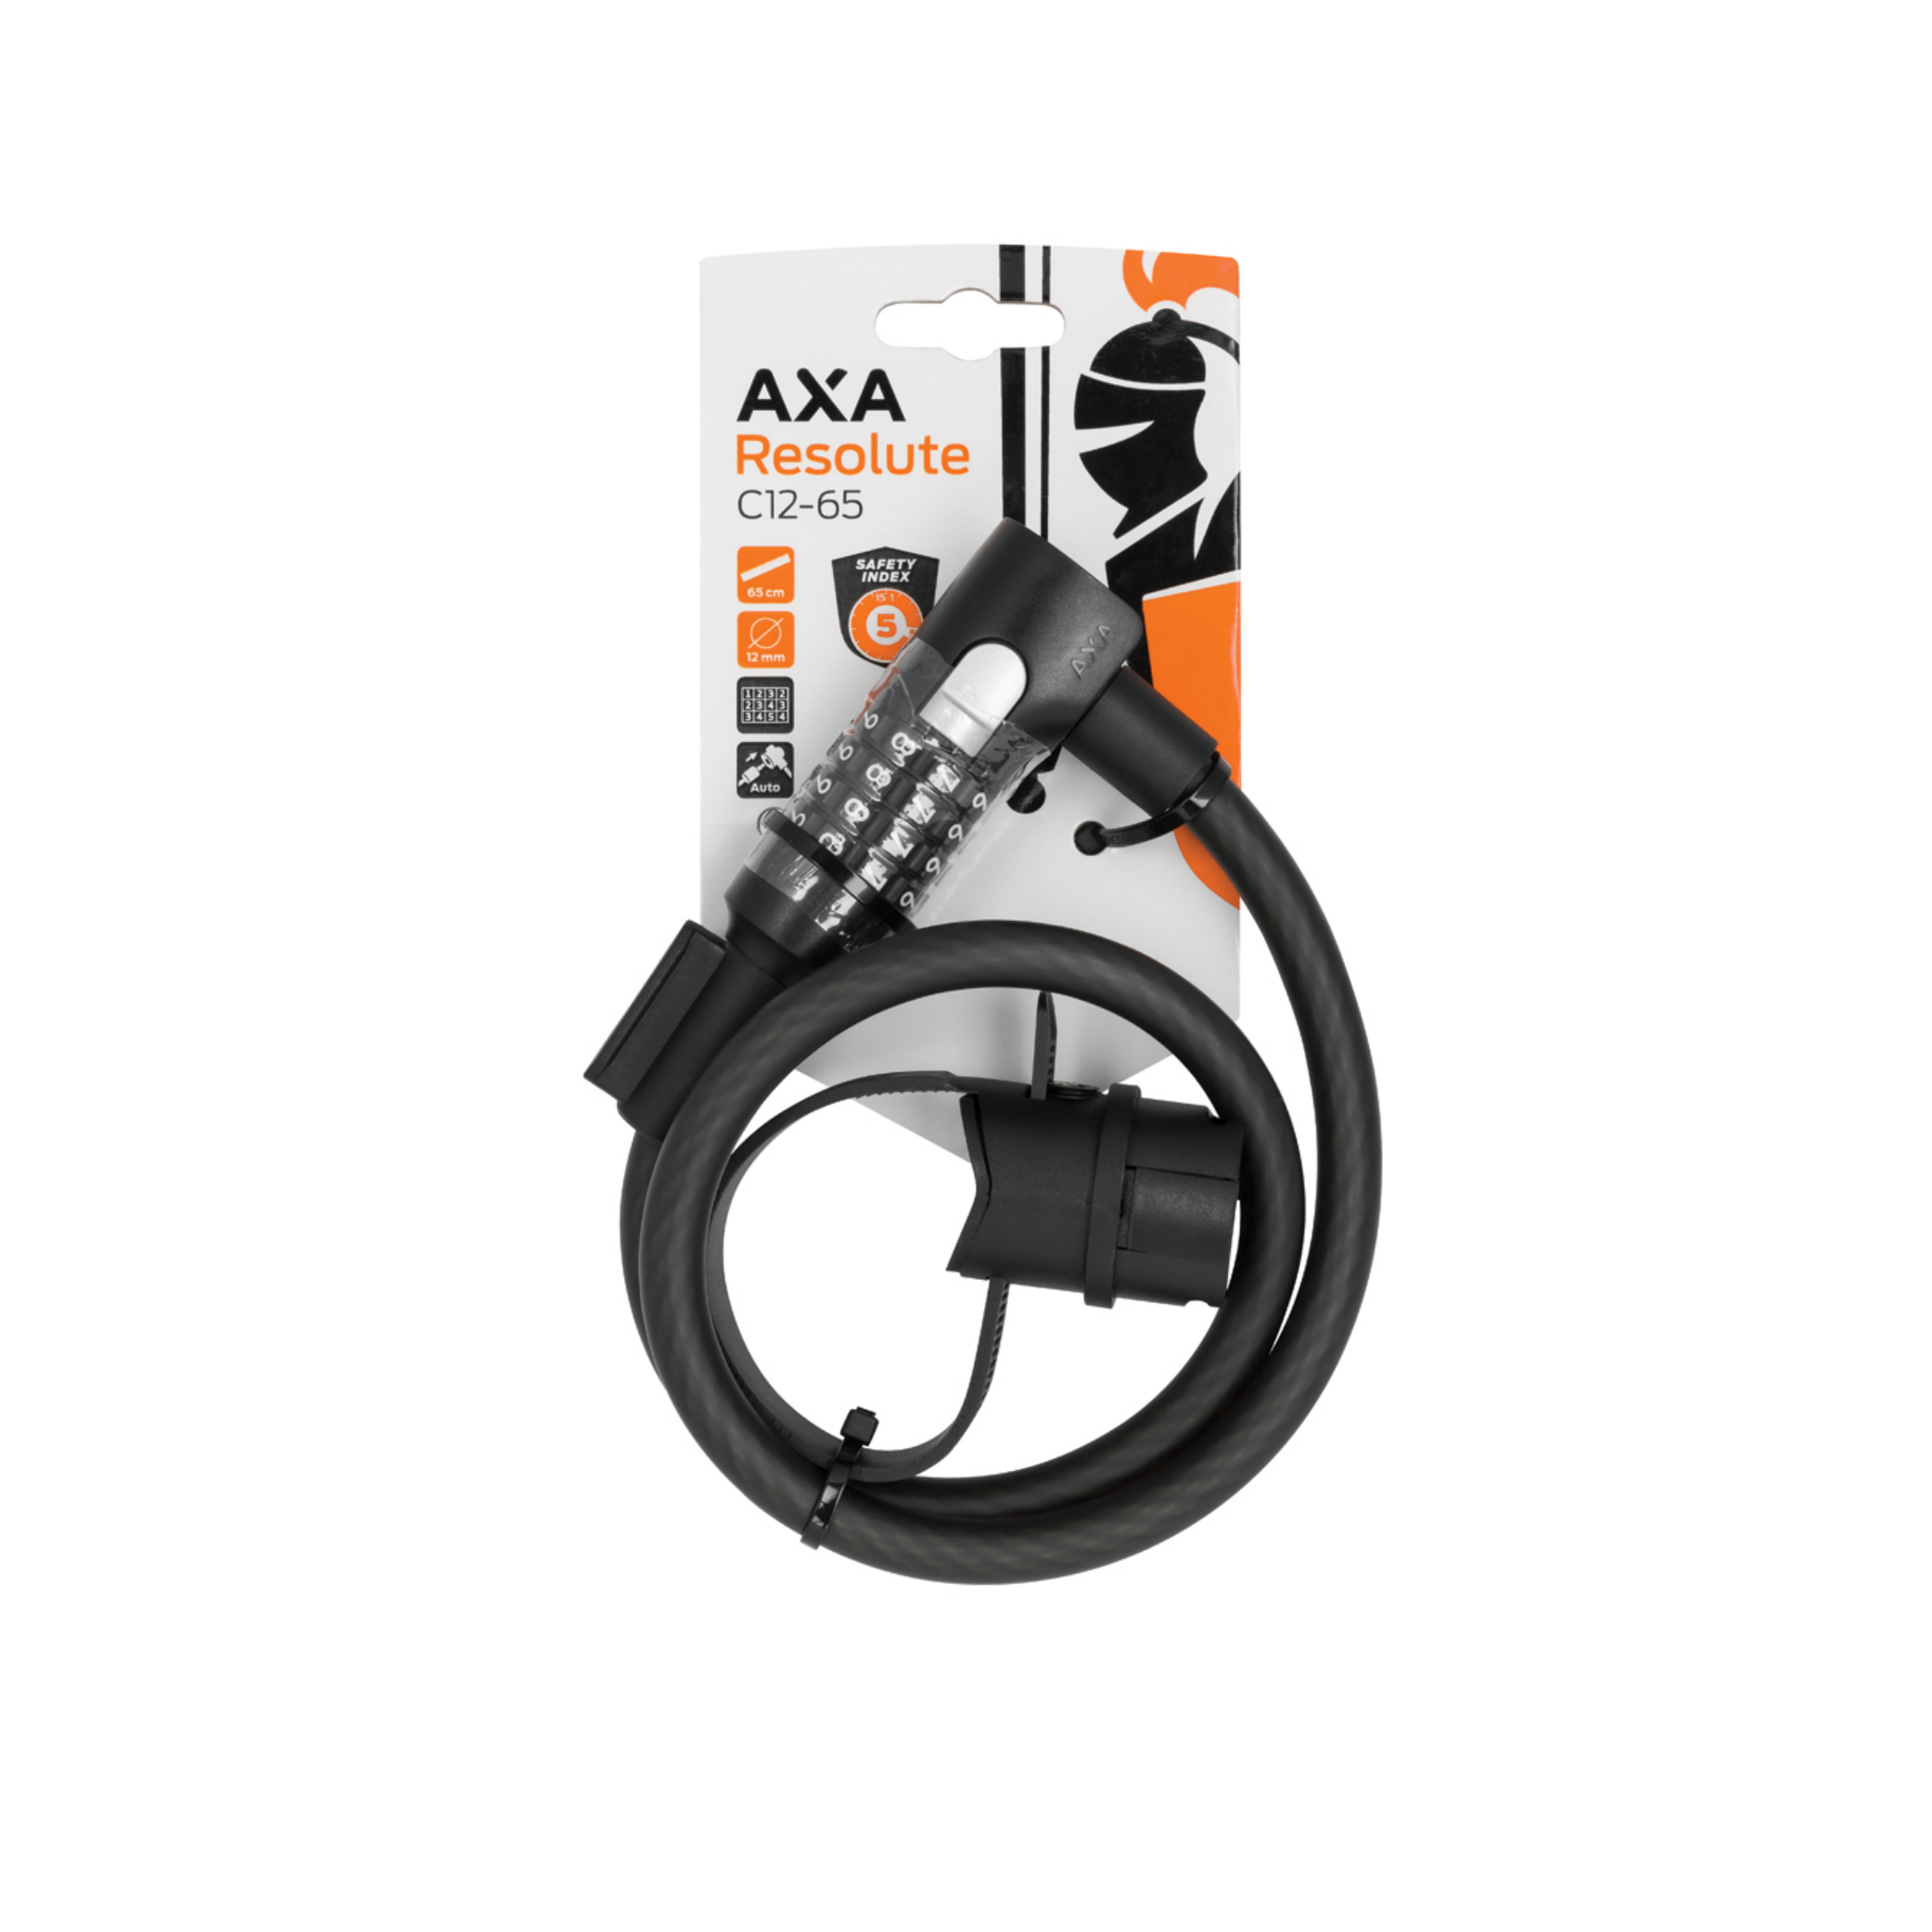 Billede af AXA Resolute C12-65 Kabel Lås hos Cykelsadlen.DK